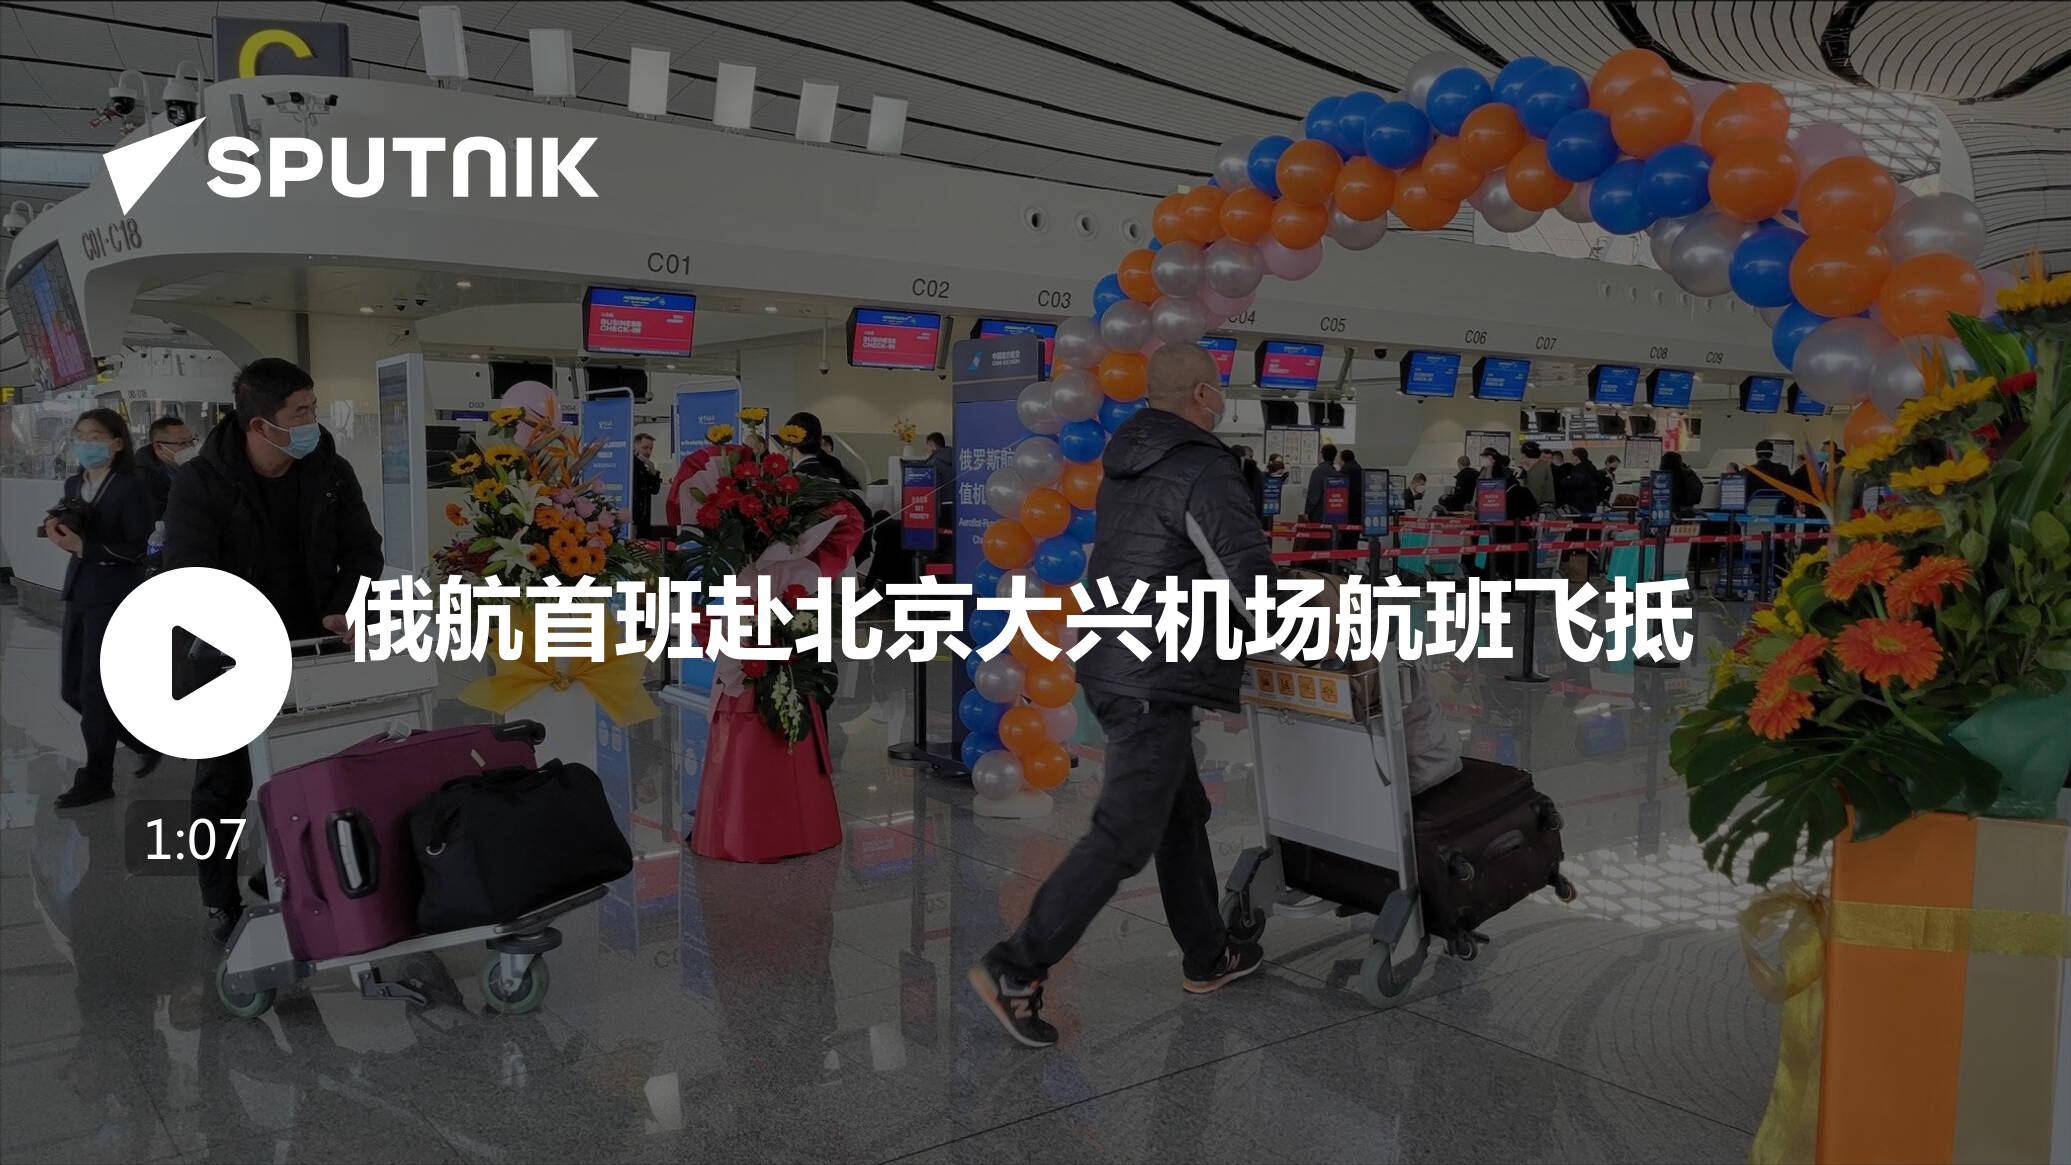 俄航首班赴北京大兴机场航班飞抵，大兴机场将开通多条国际航线 - 民用航空网